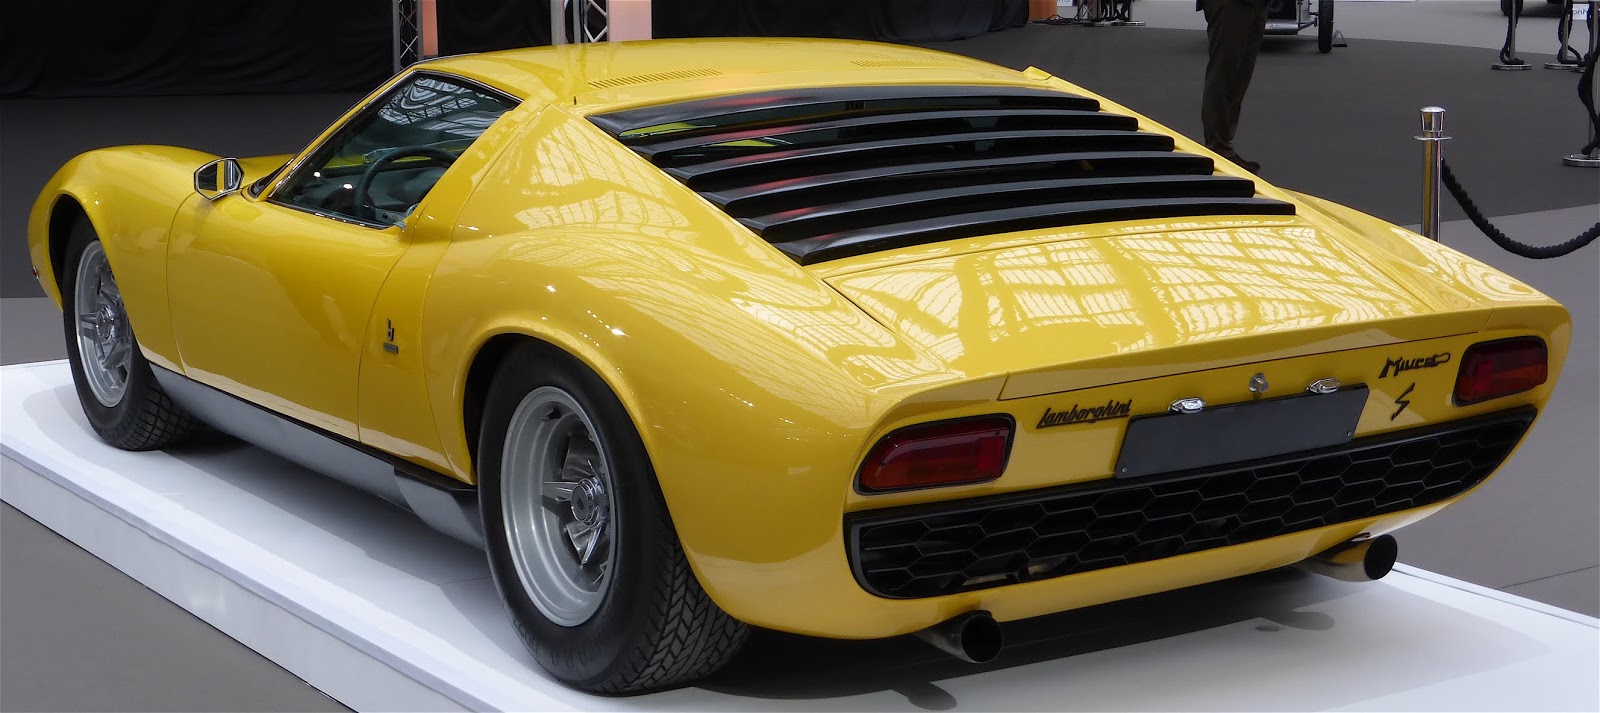 32222547147 c713bbfddf o Lamborghini Miura. Η γέννηση του supercar.